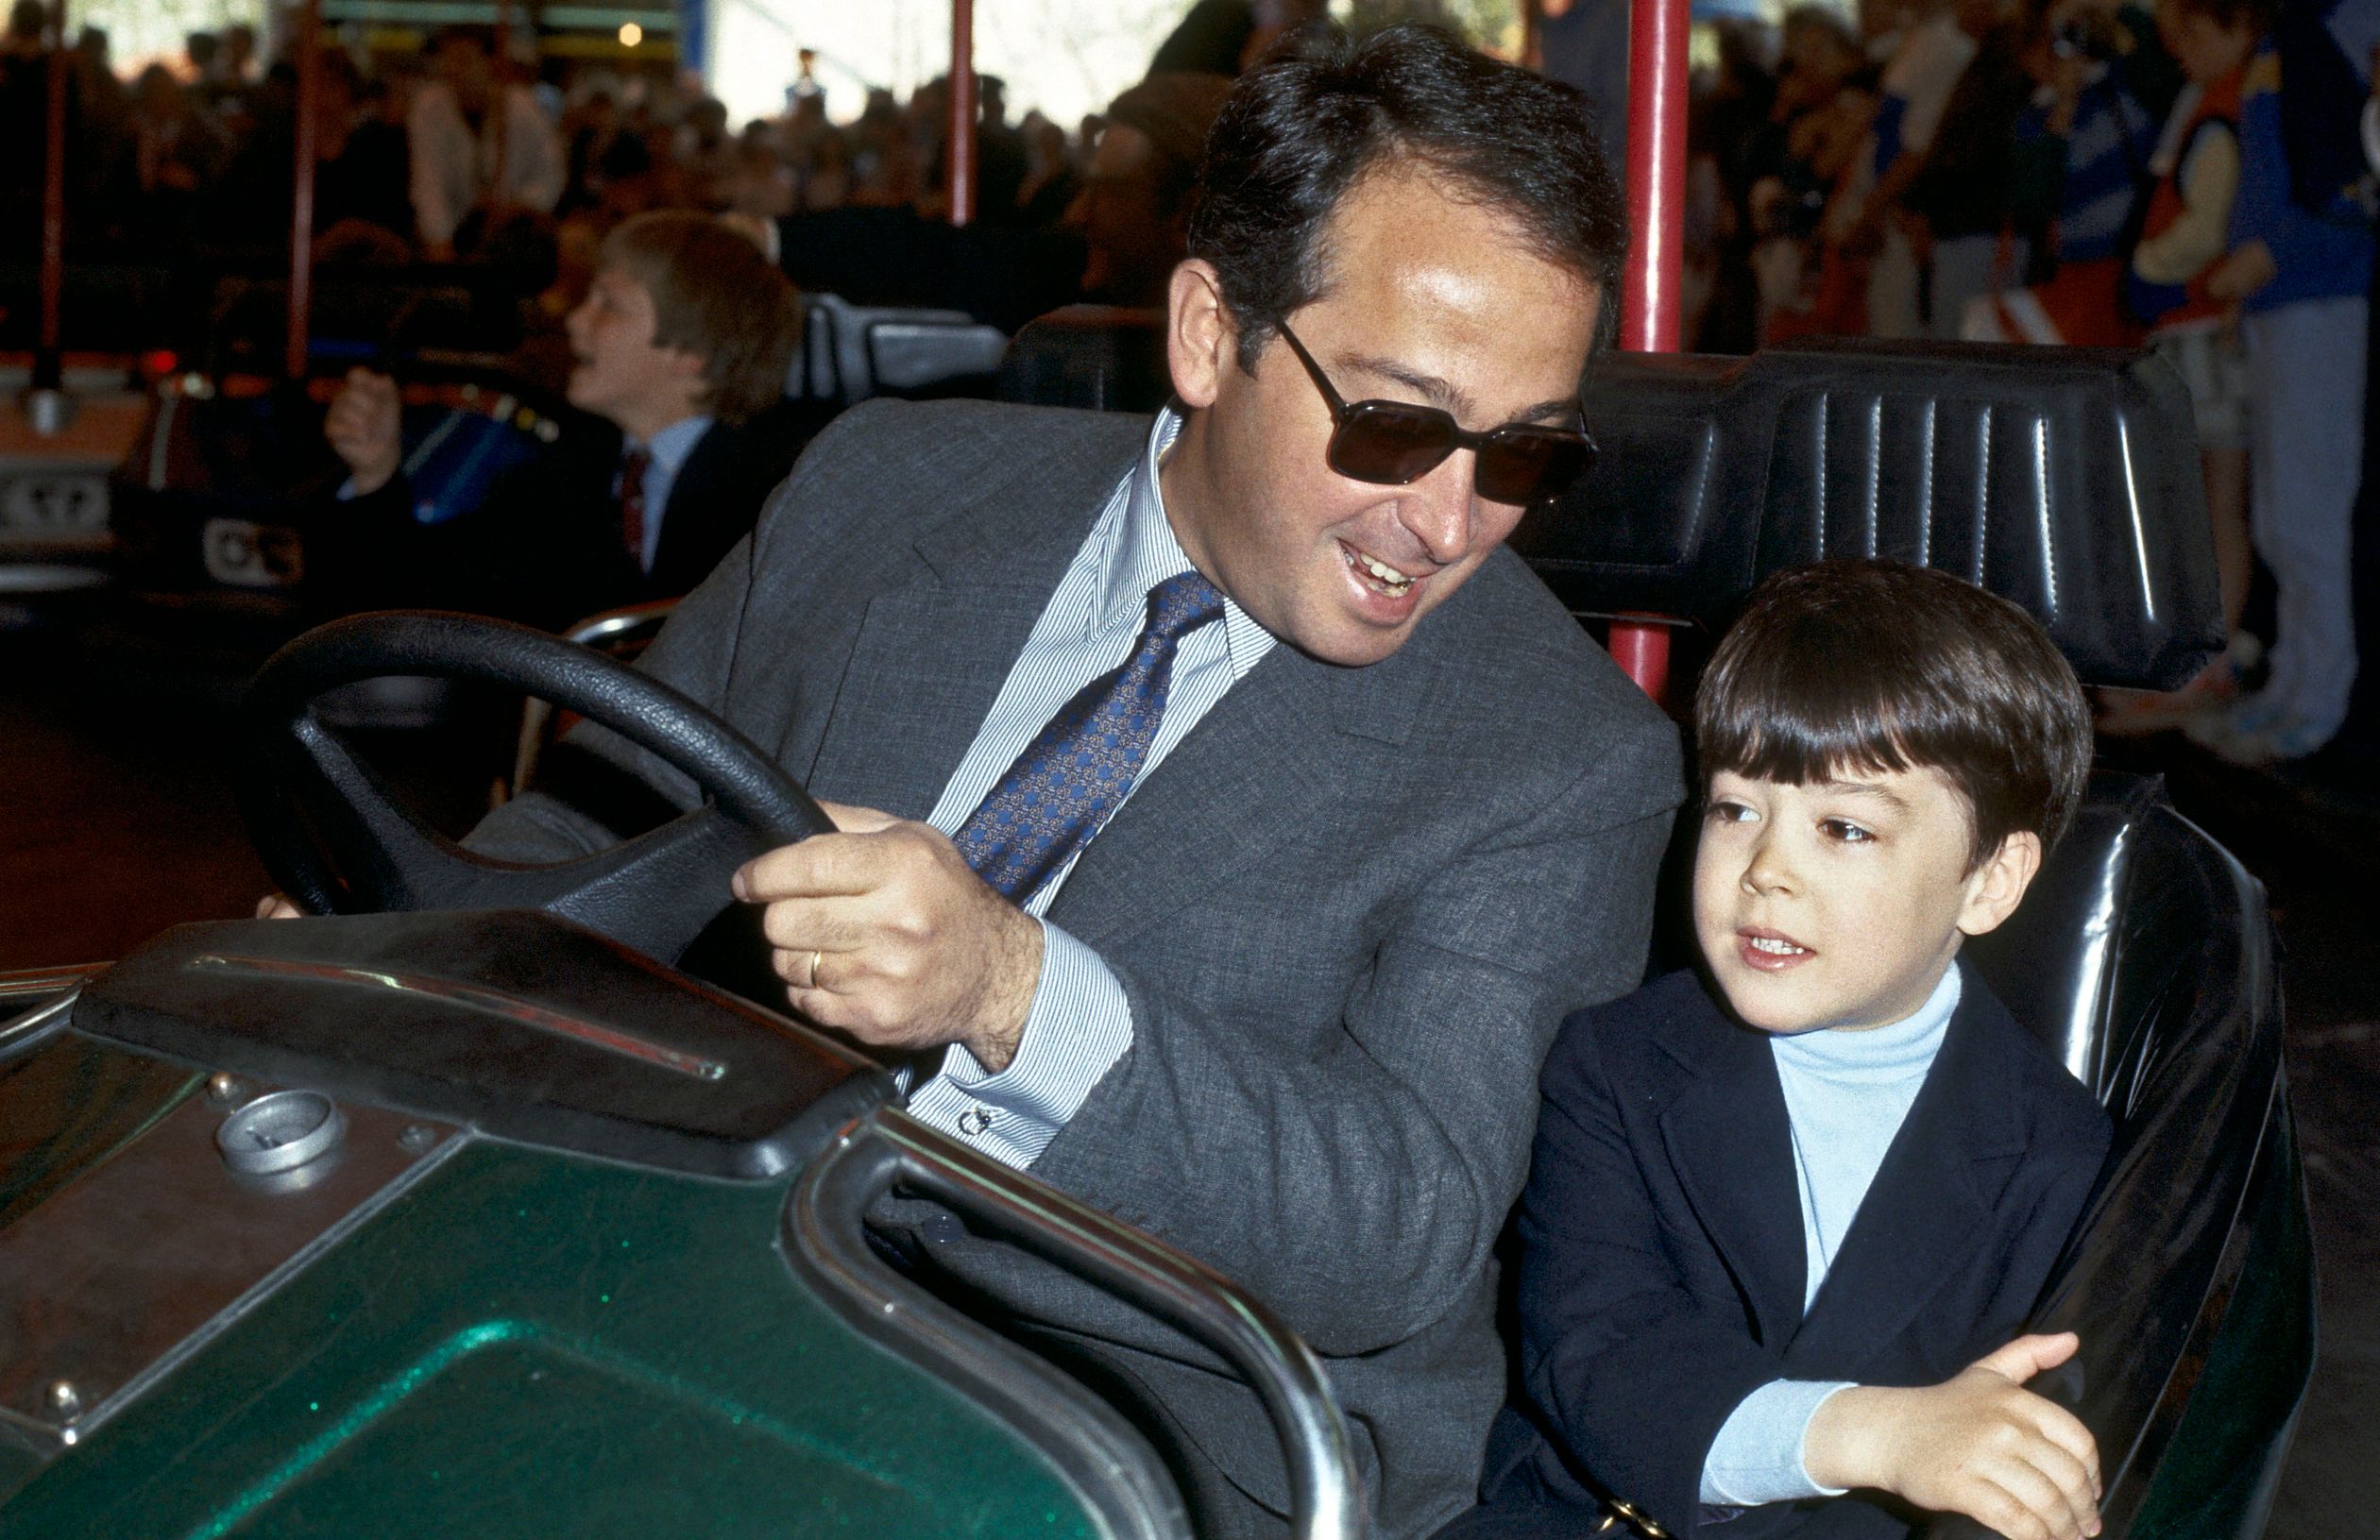 Nicolás samen met zijn vader in een botsauto op de Haagse kermis. De gehele koninklijke familie was daar op 30 april 1984 te vinden ter viering van de 75e verjaardag van prinses Juliana.